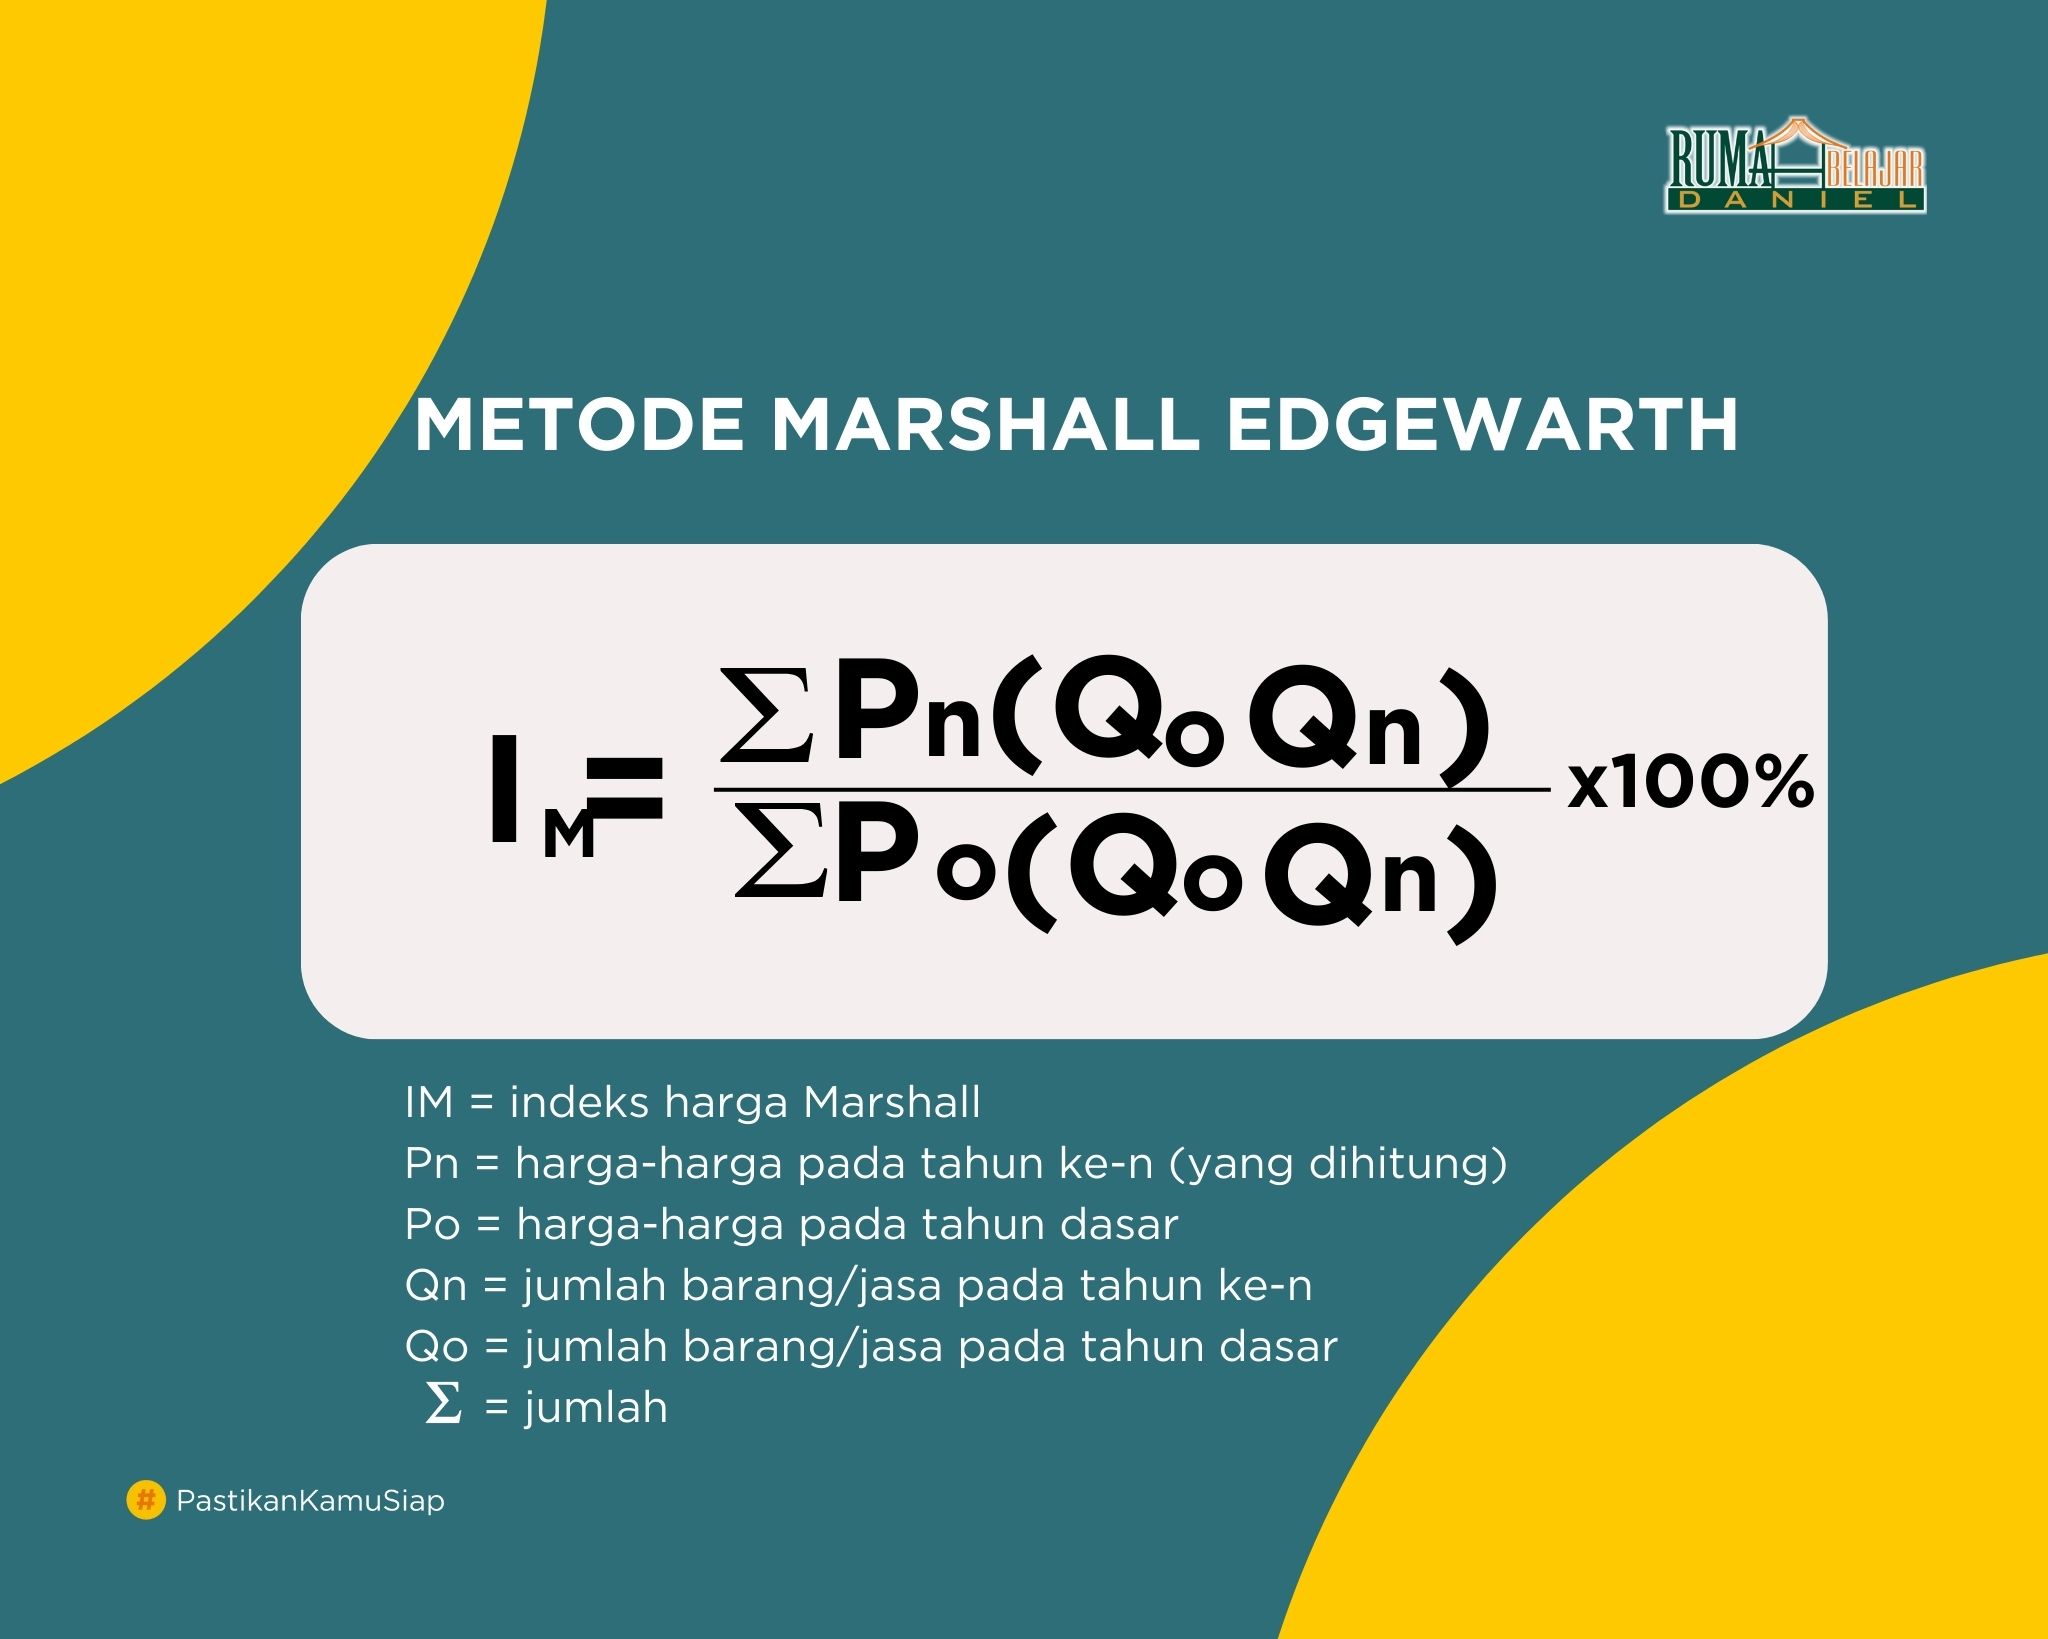 metode marshall edgewarth